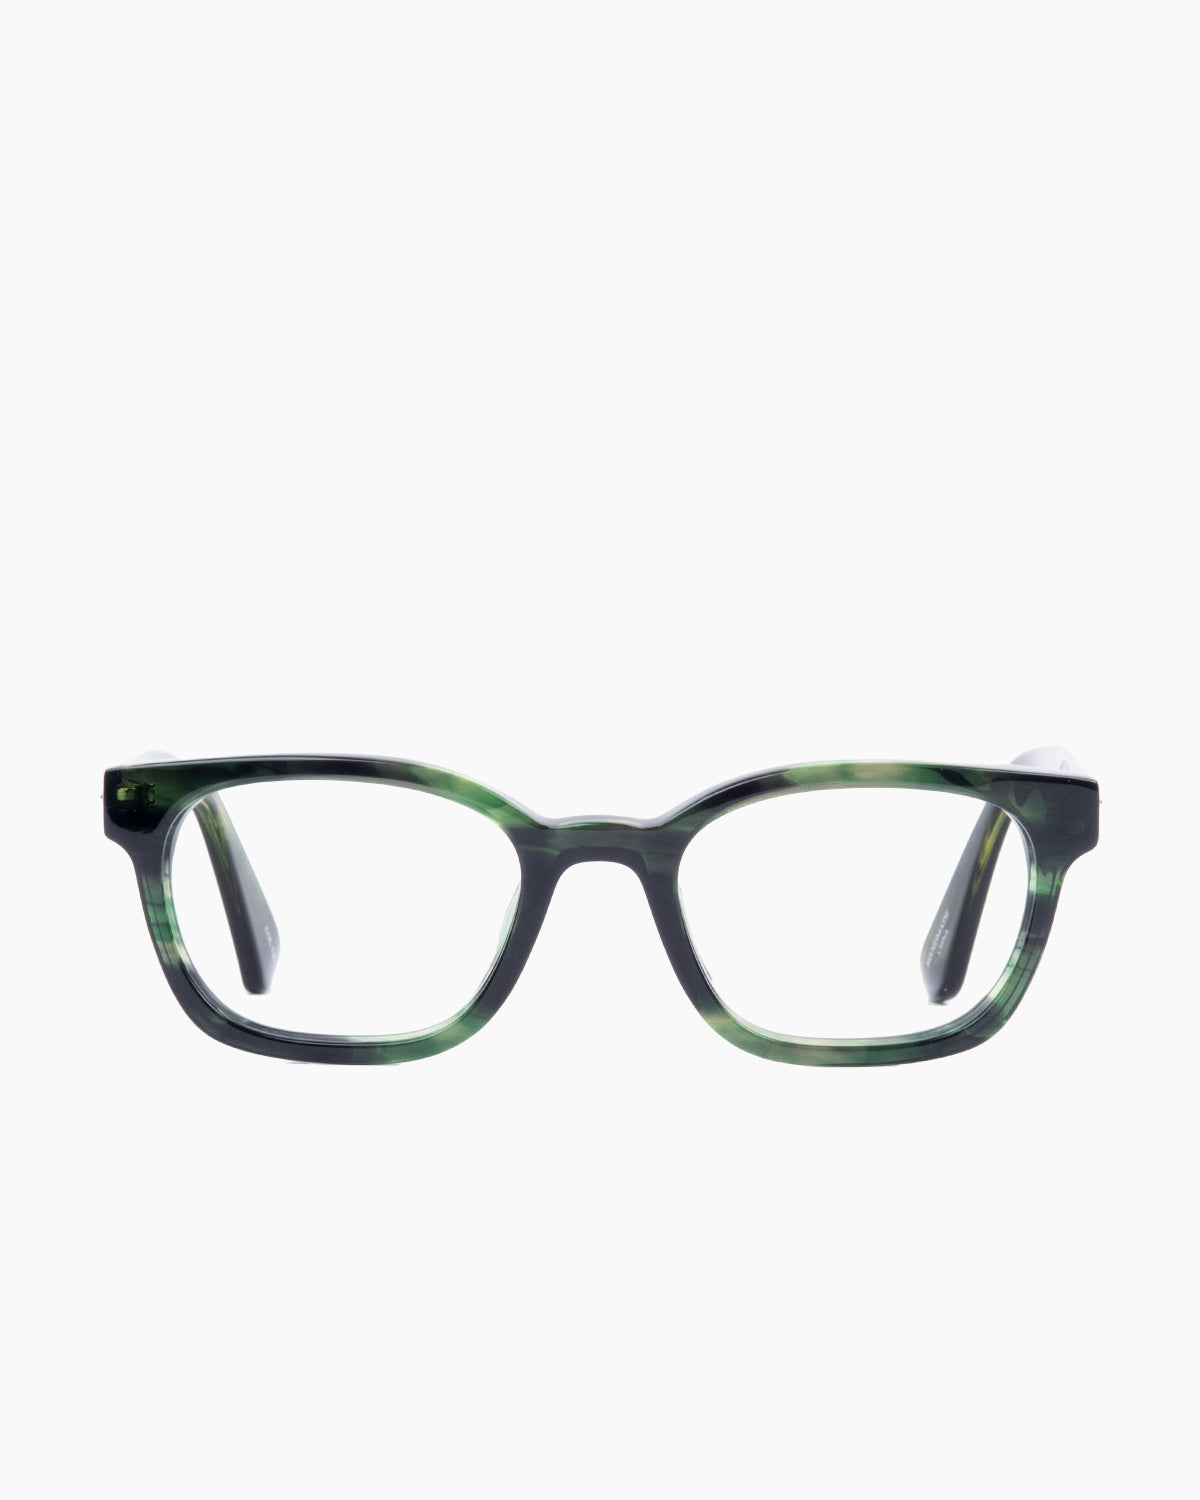 Evolve-Benz-136 | glasses bar:  Marie-Sophie Dion